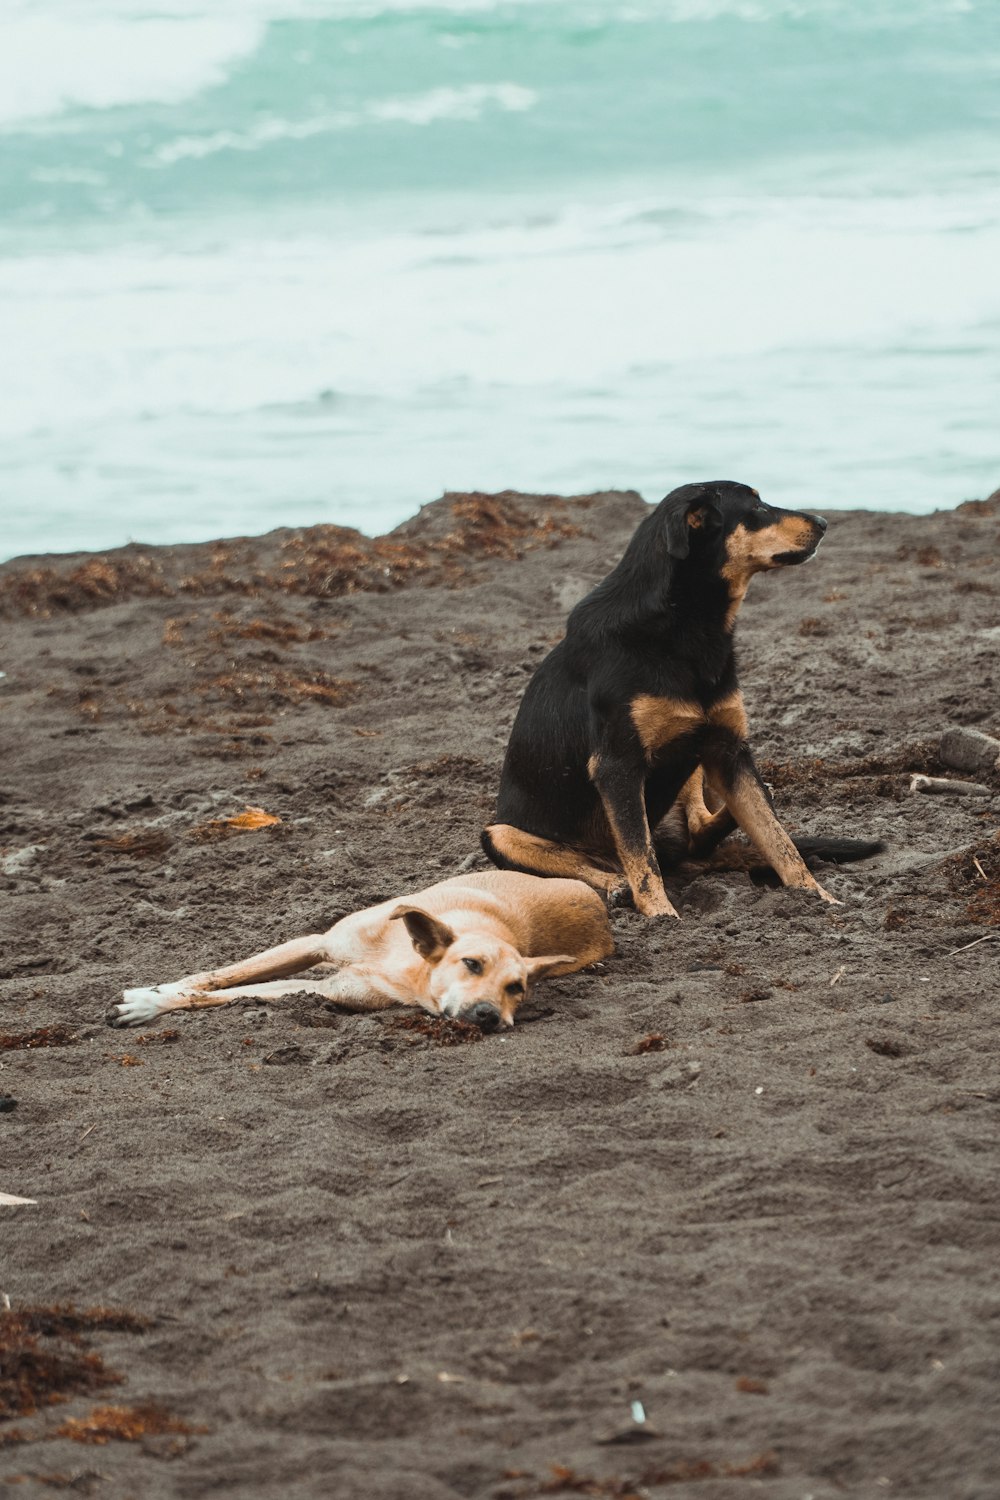 모래 사장 위에 앉아 있는 검은색과 갈색 개